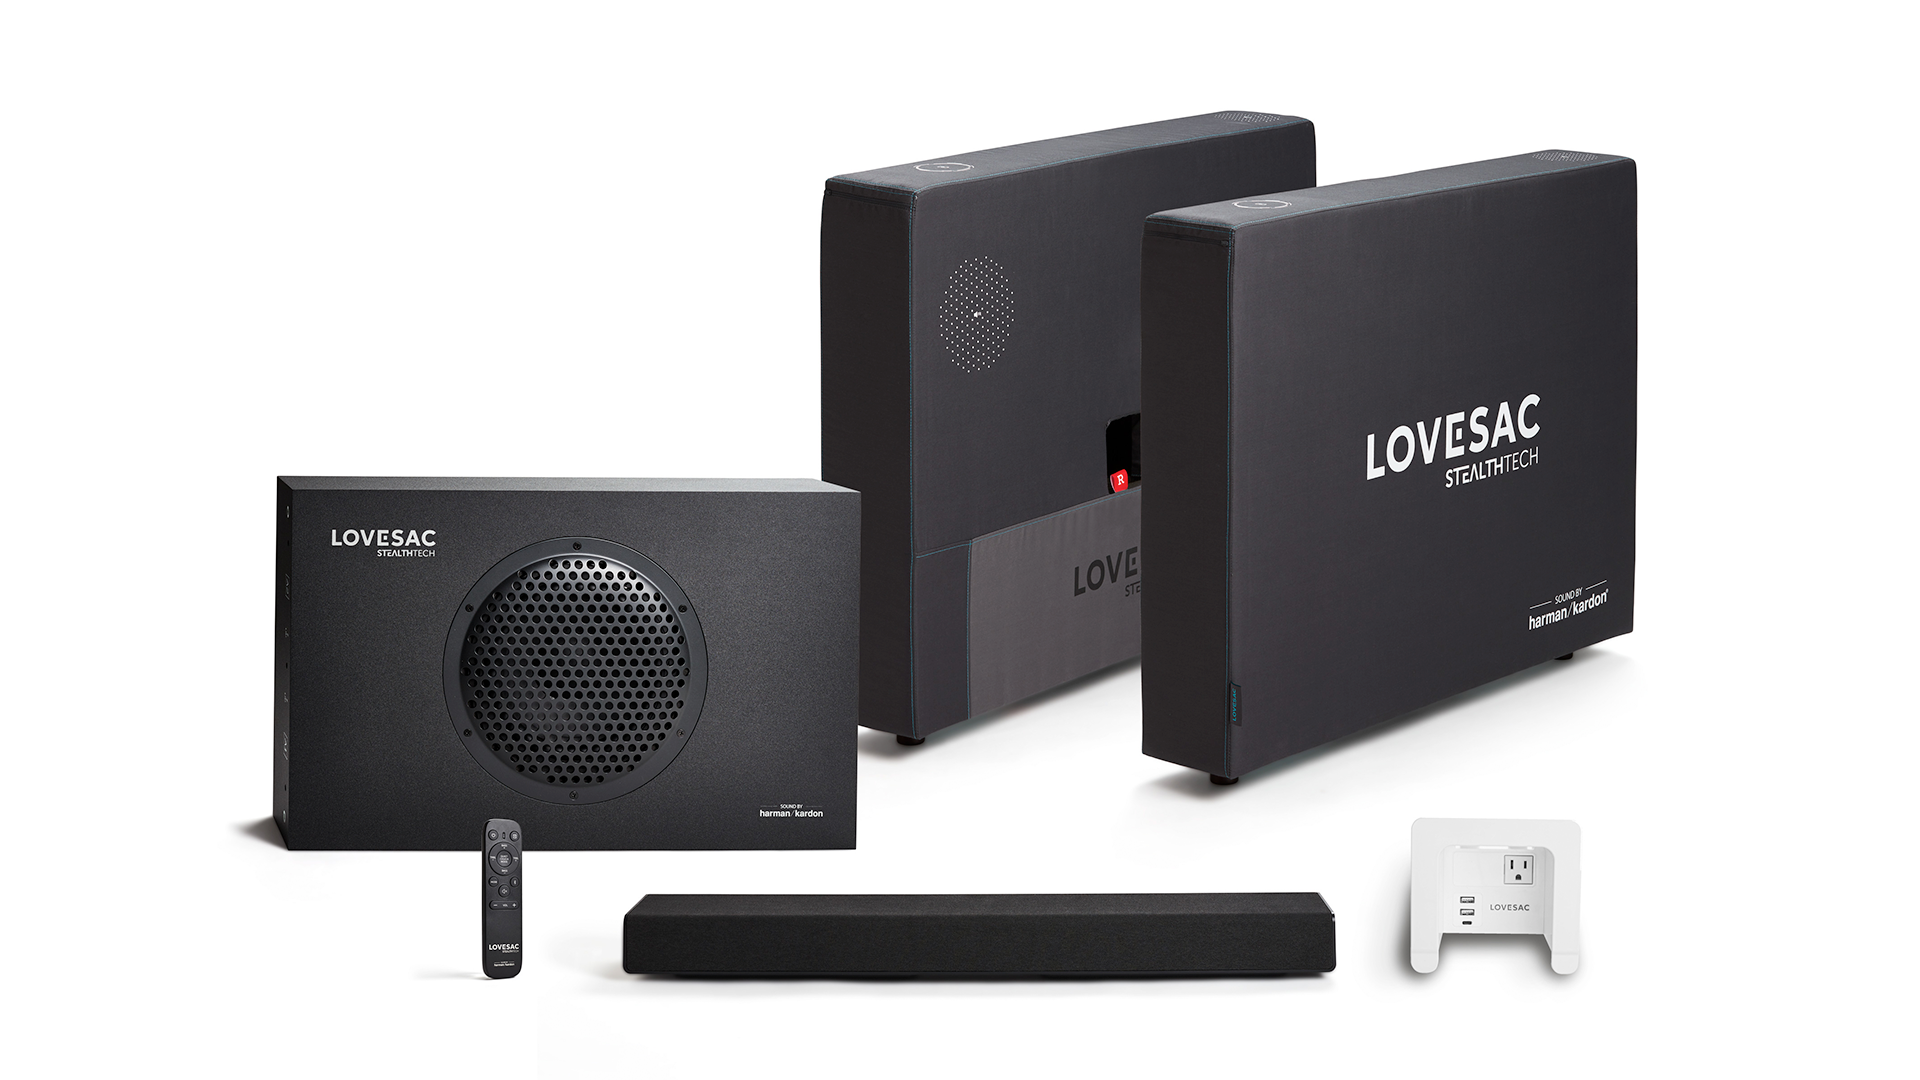 The Lovesac Stealth speaker set. 